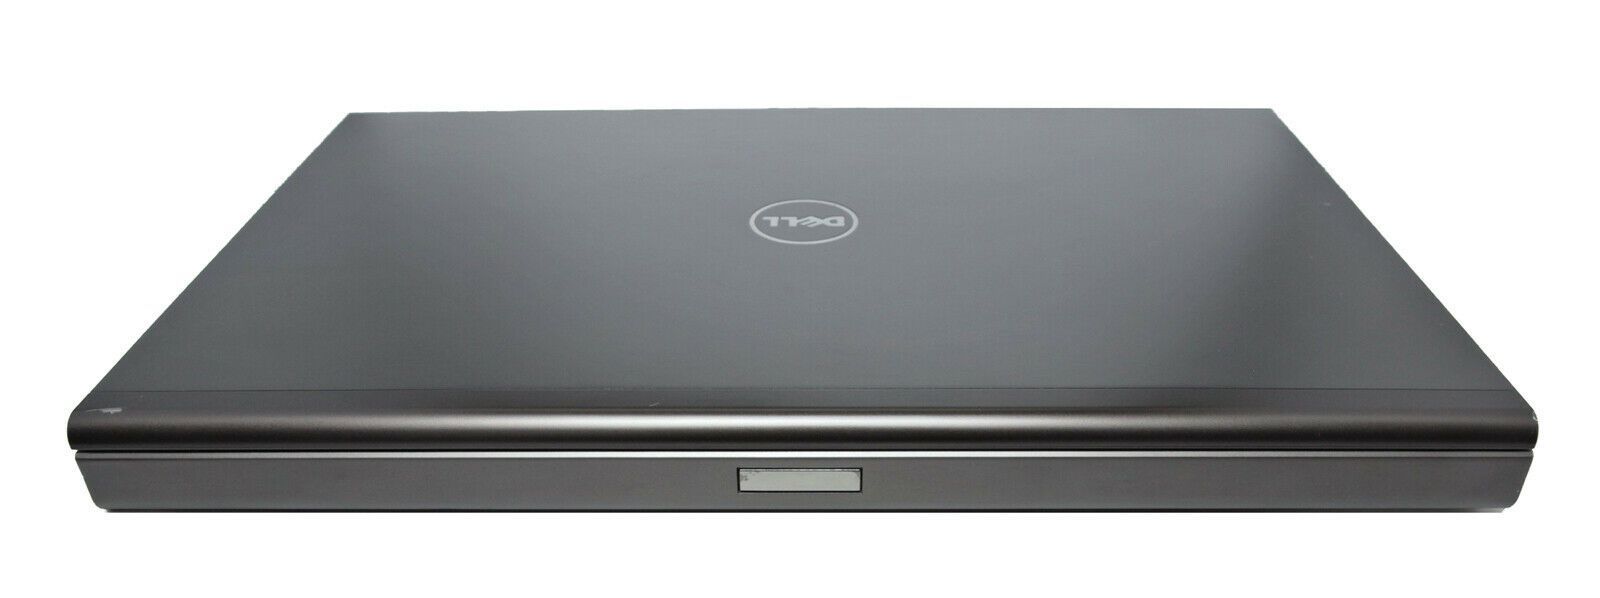 Dell Precision M6700 CAD Laptop: Core i7, Quadro, 240GB SSD, VAT Warranty - CruiseTech